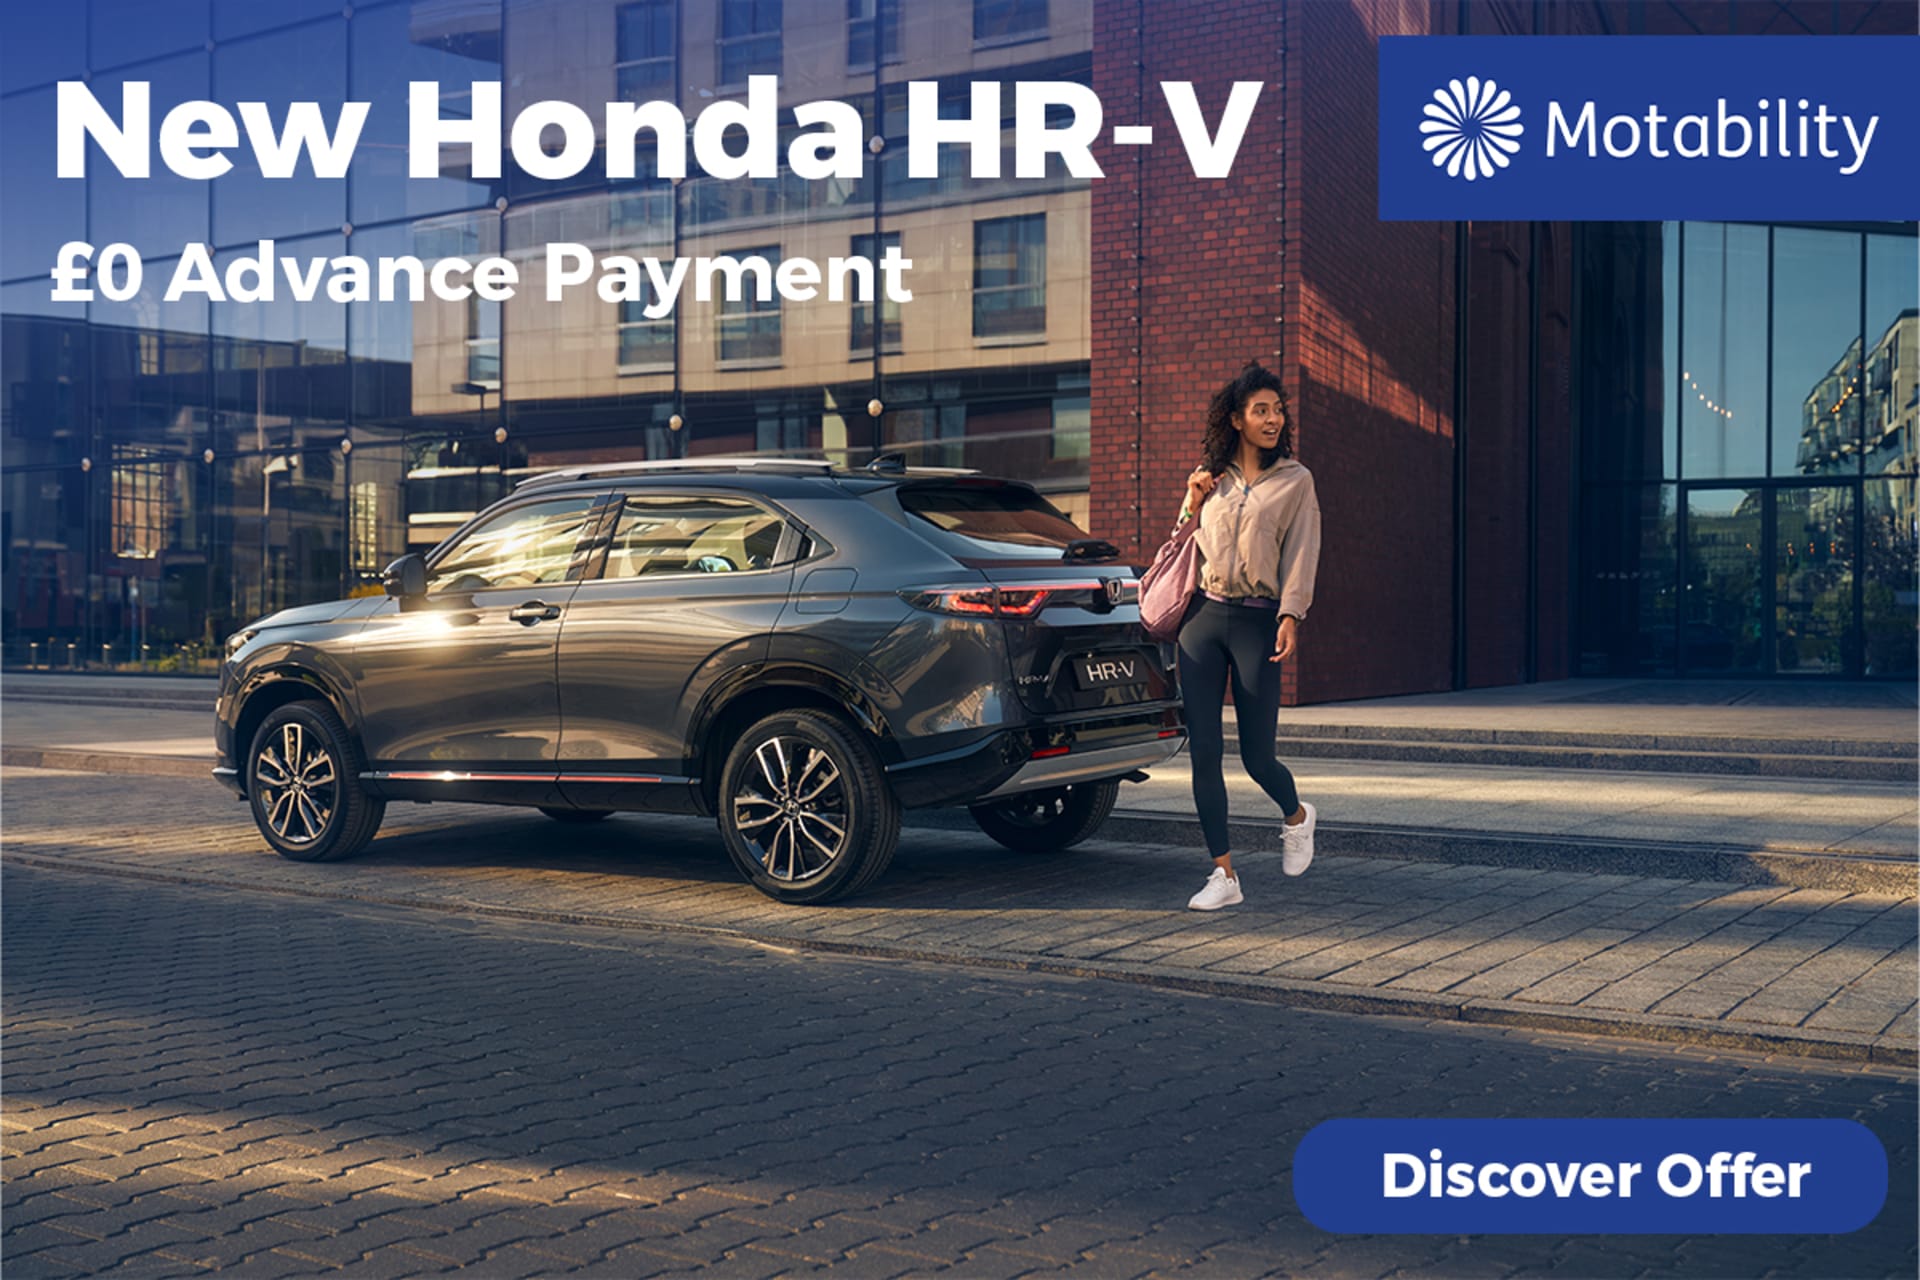 Honda HR-V Motability Offer 